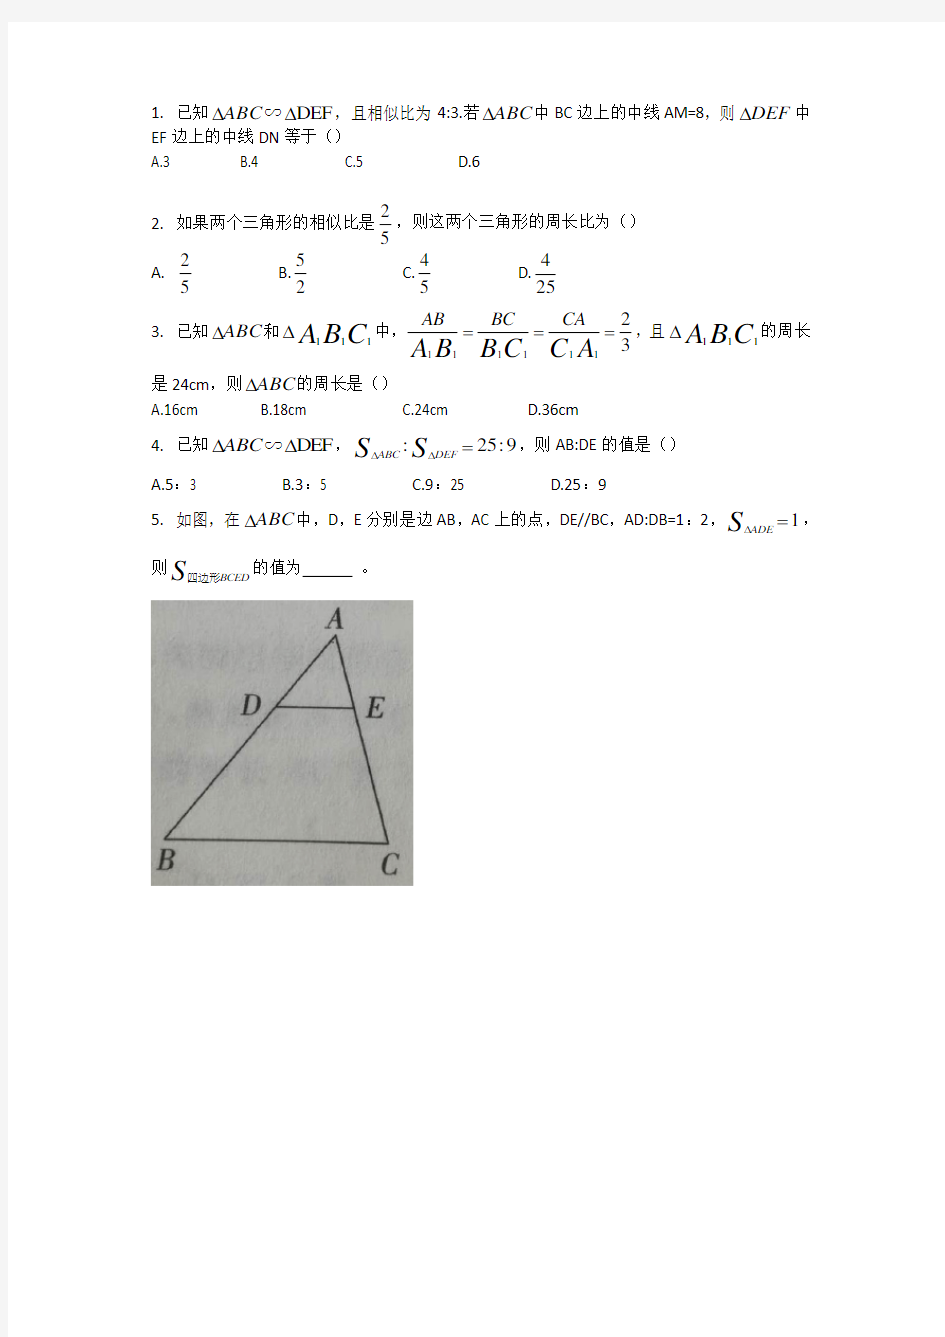 相似三角形性质的应用